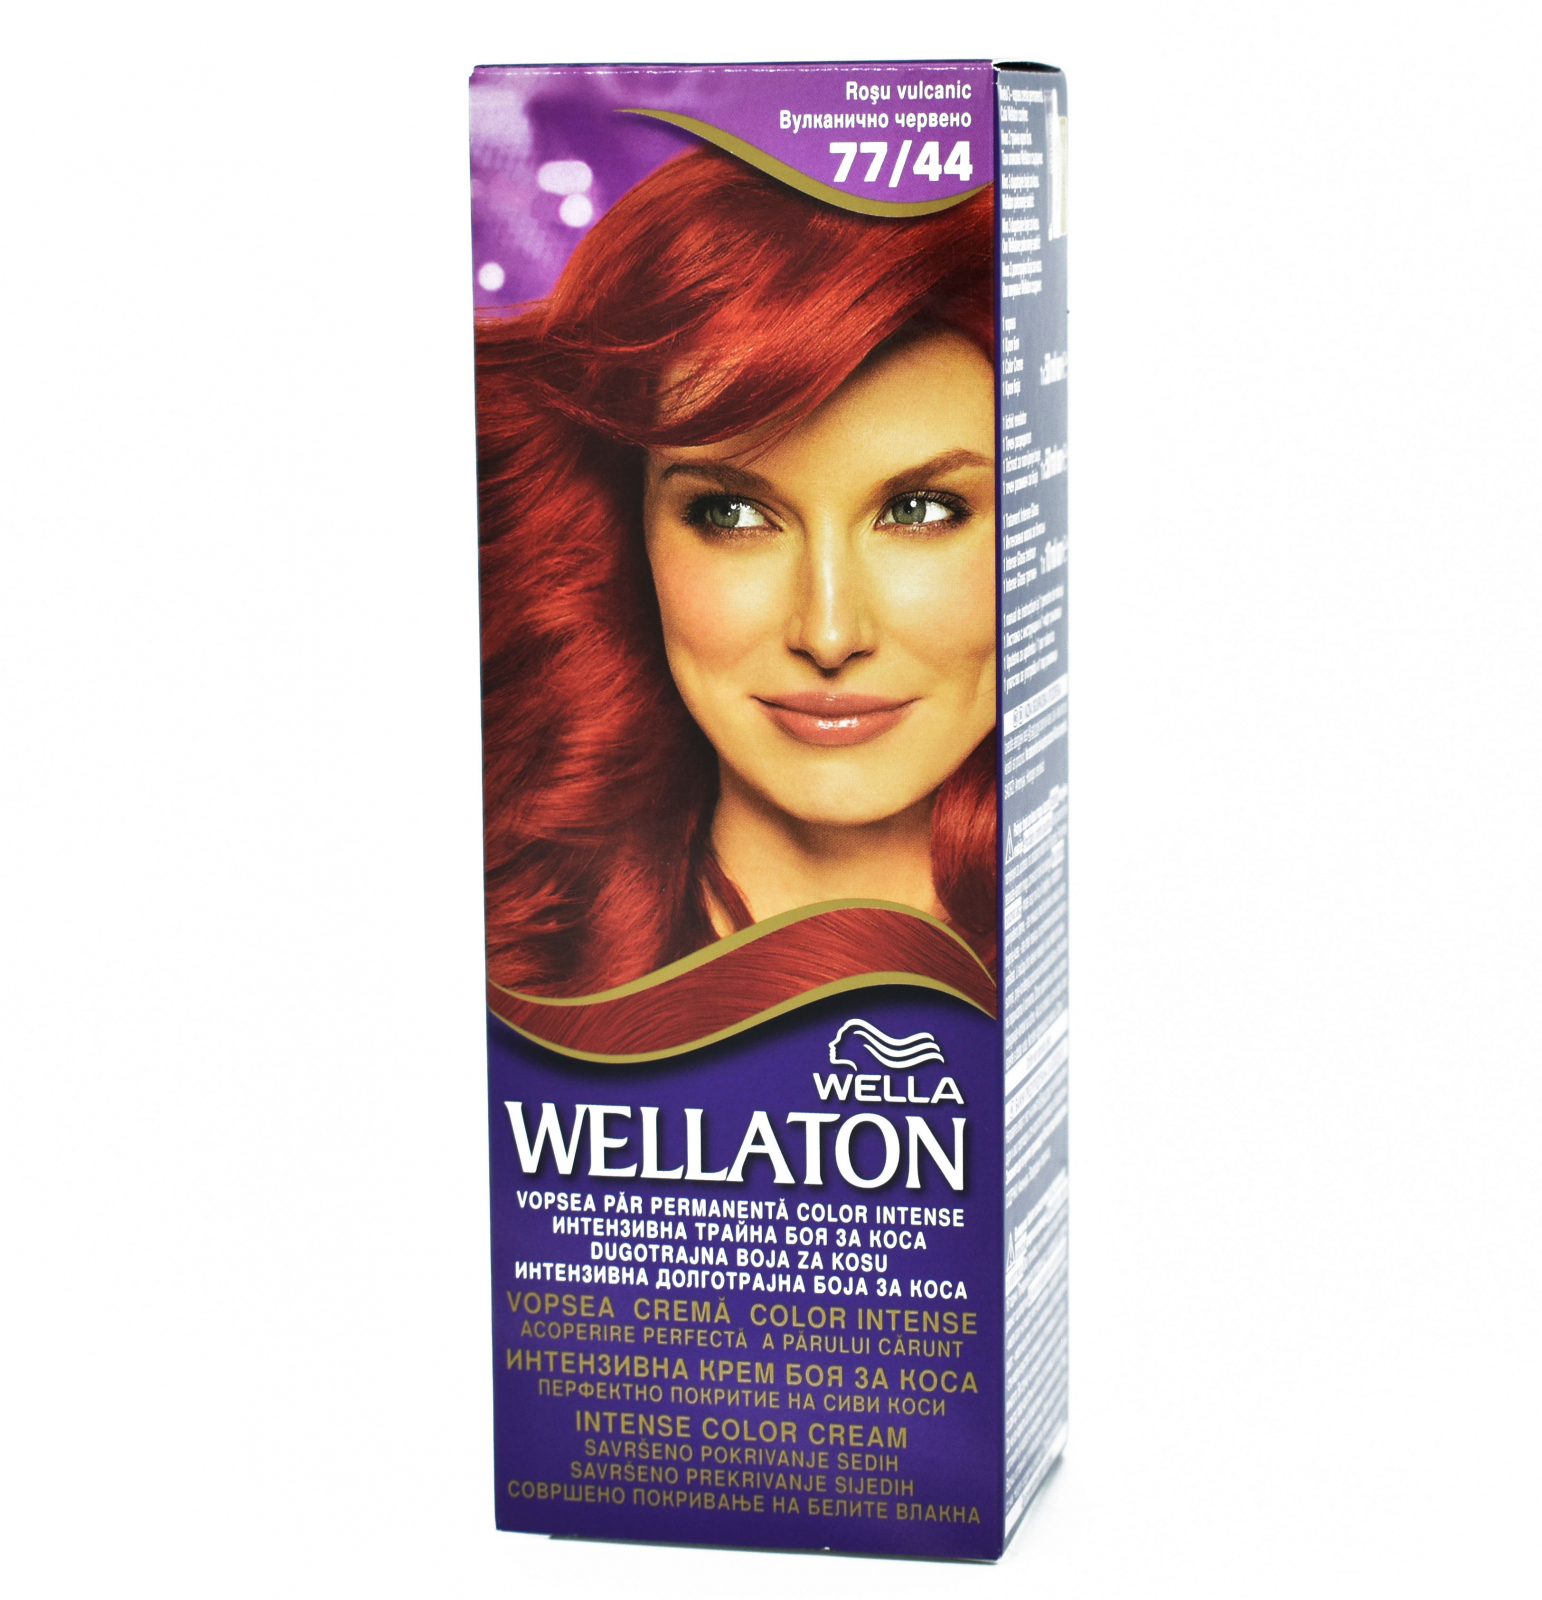 Веллатон 77/44. Краска Wellaton для волос красный вулкан 77/44. Краска веллатон в коробке. Краска веллатон карамель.